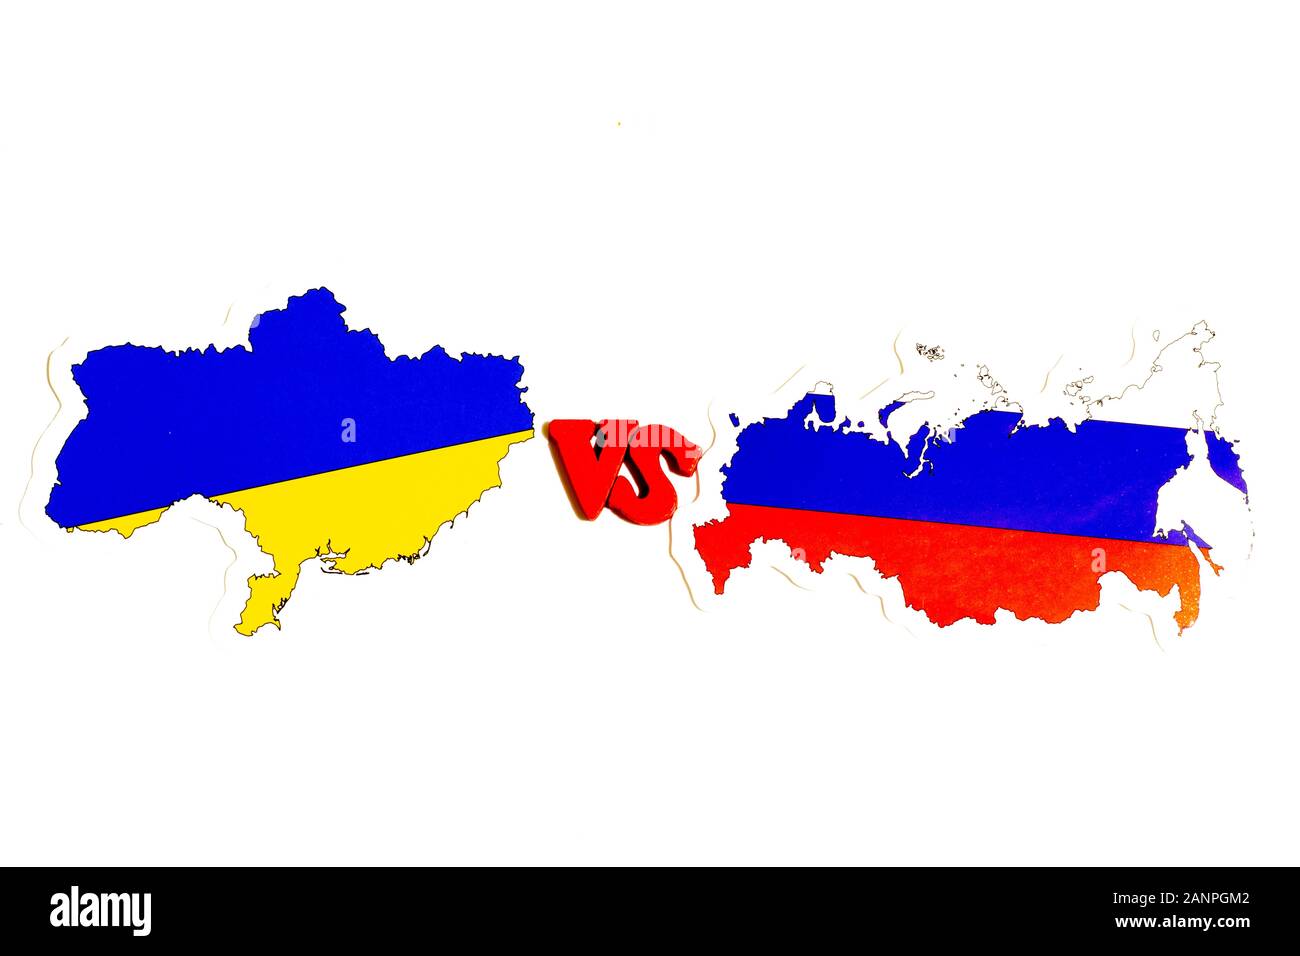 Los Angeles, Californie, États-Unis - 17 janvier 2020: Russie contre Ukraine concept. Illustration politique. Drapeaux Nationaux, Éditorial Illustratif Banque D'Images